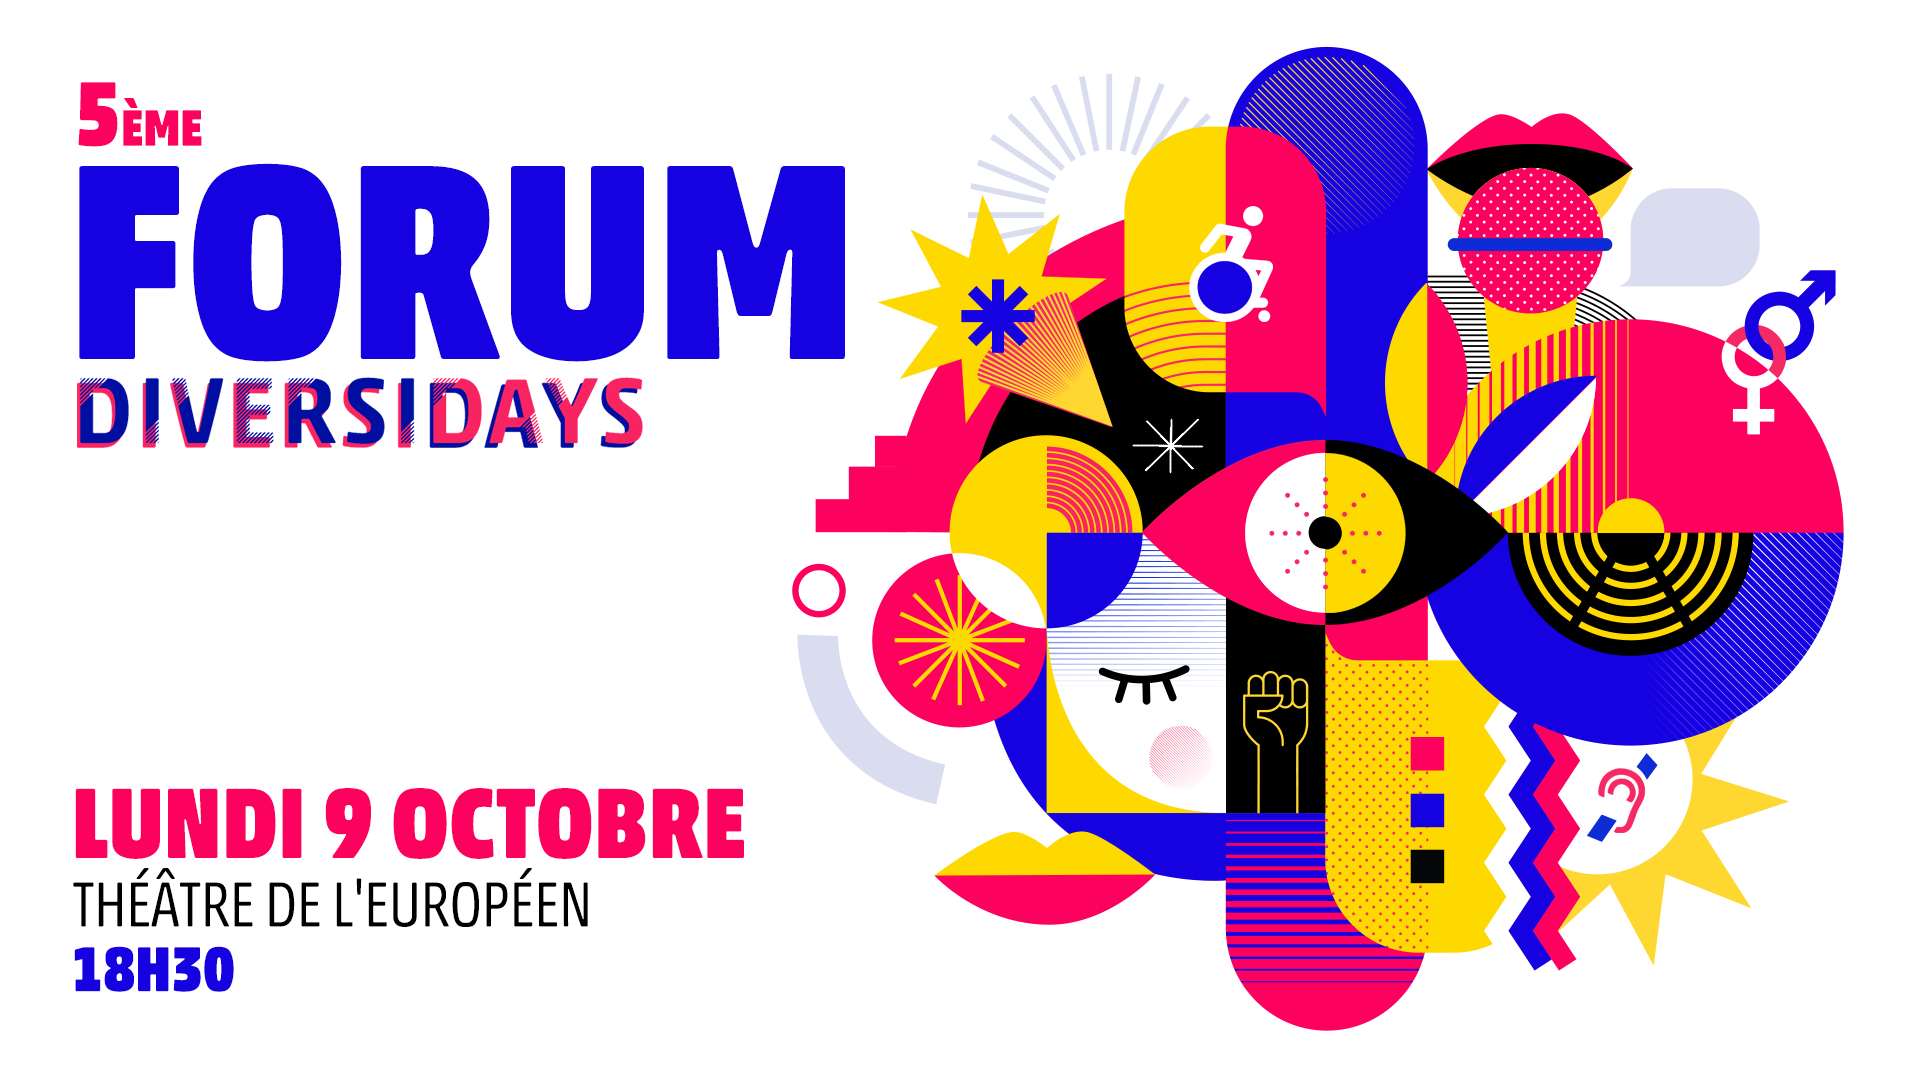 5ème forum diversidays, Lundi 9 octobre, théâtre de l'européen, 18h30